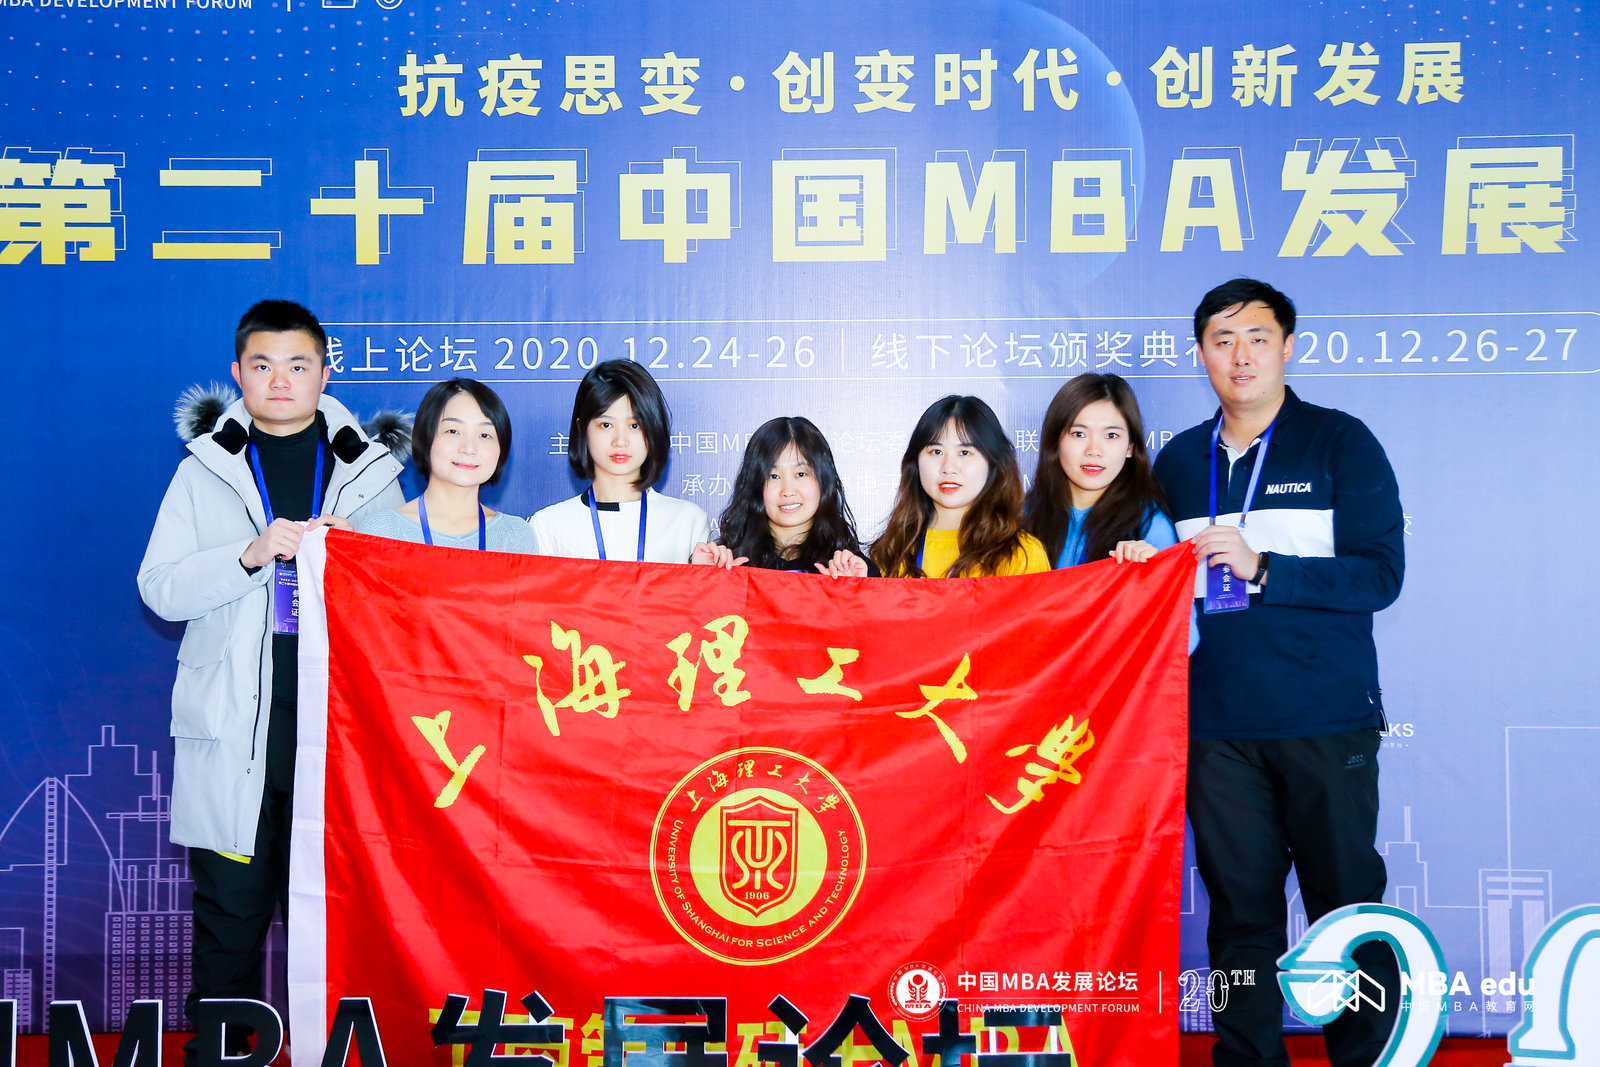 上海理工大学专业学位教育中心MBA项目招生主管于小青一行出席第二十届中国MBA发展论坛并斩获多项荣誉